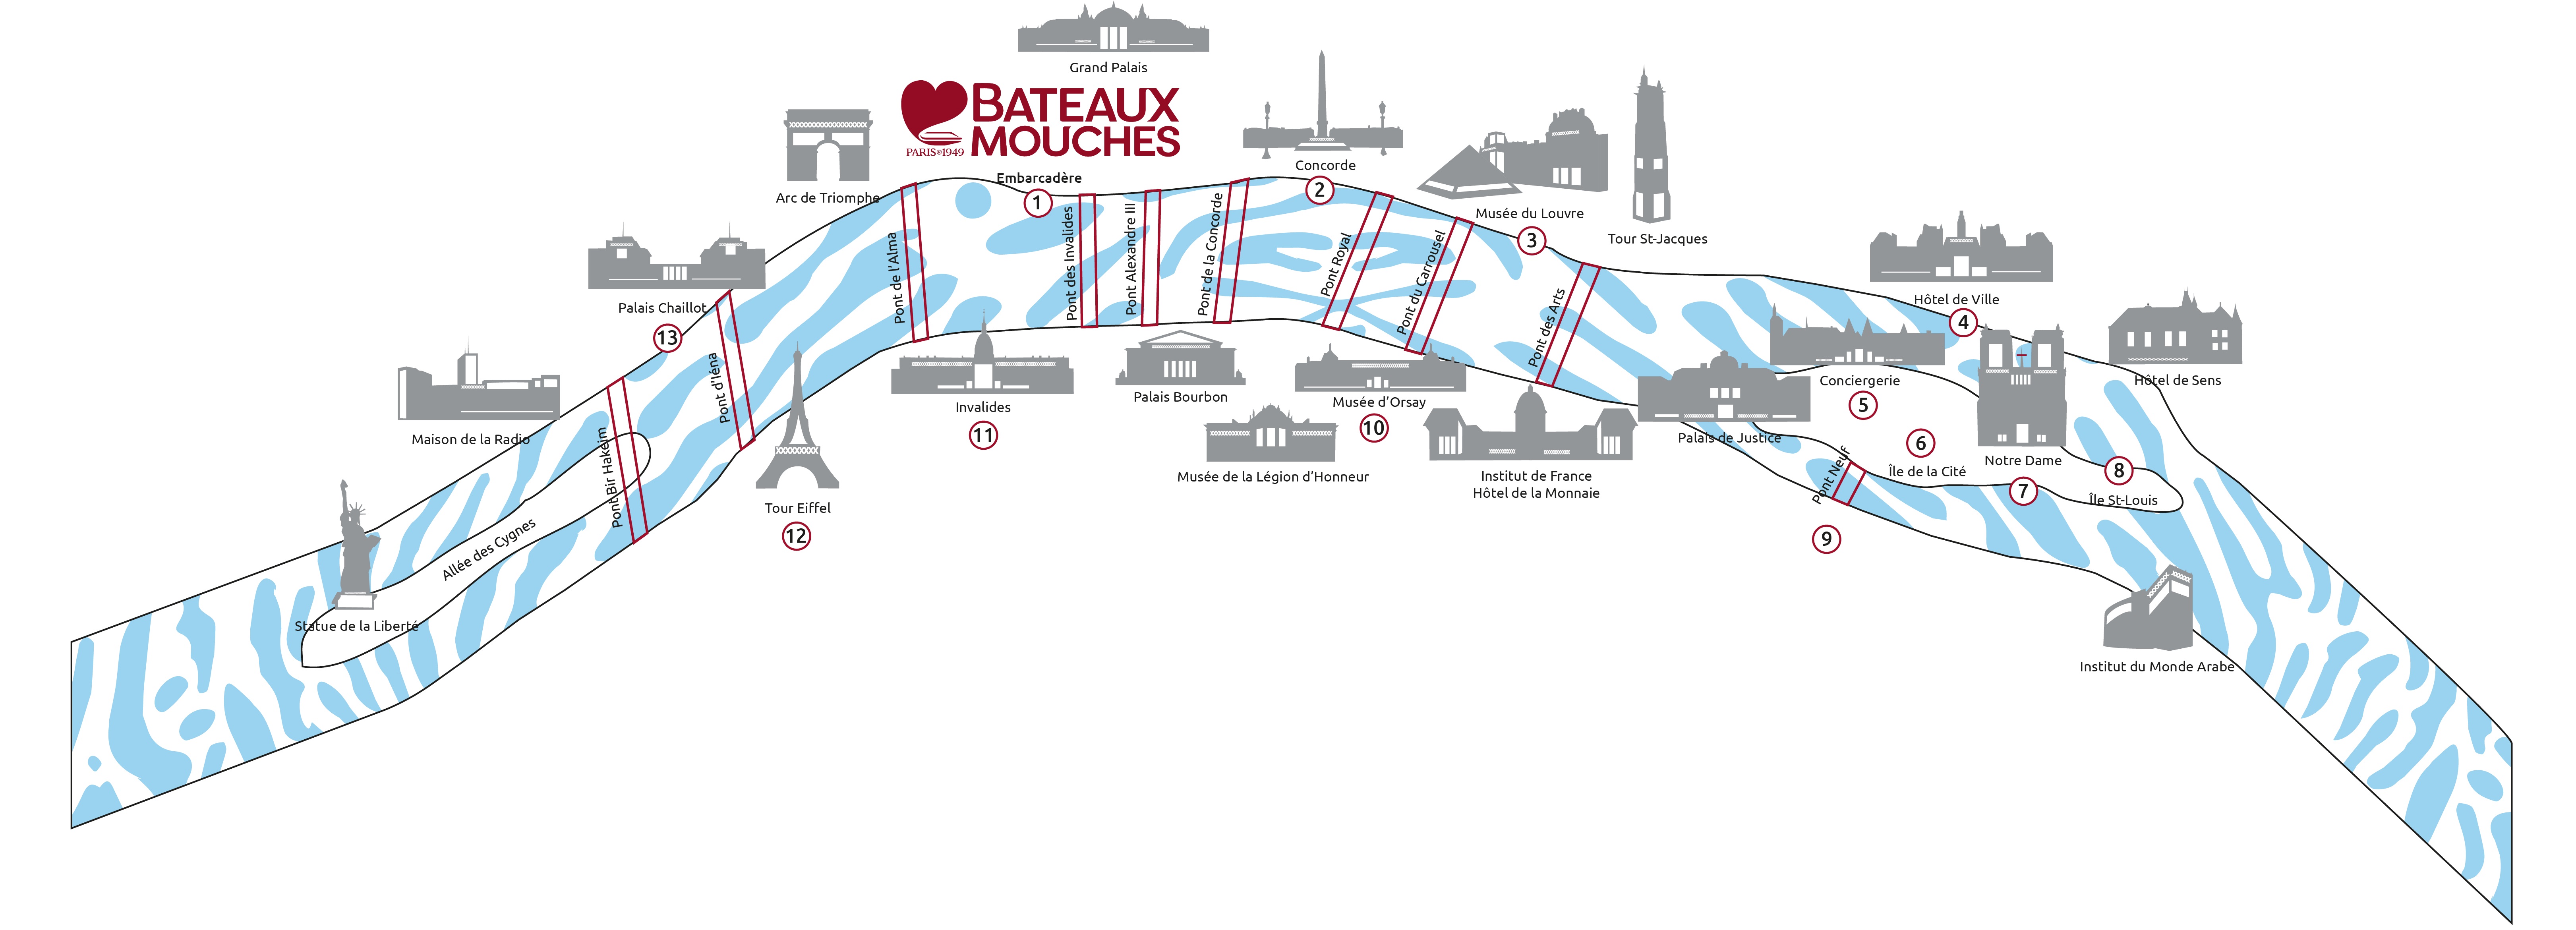 Bateaux-Mouches®游船路线